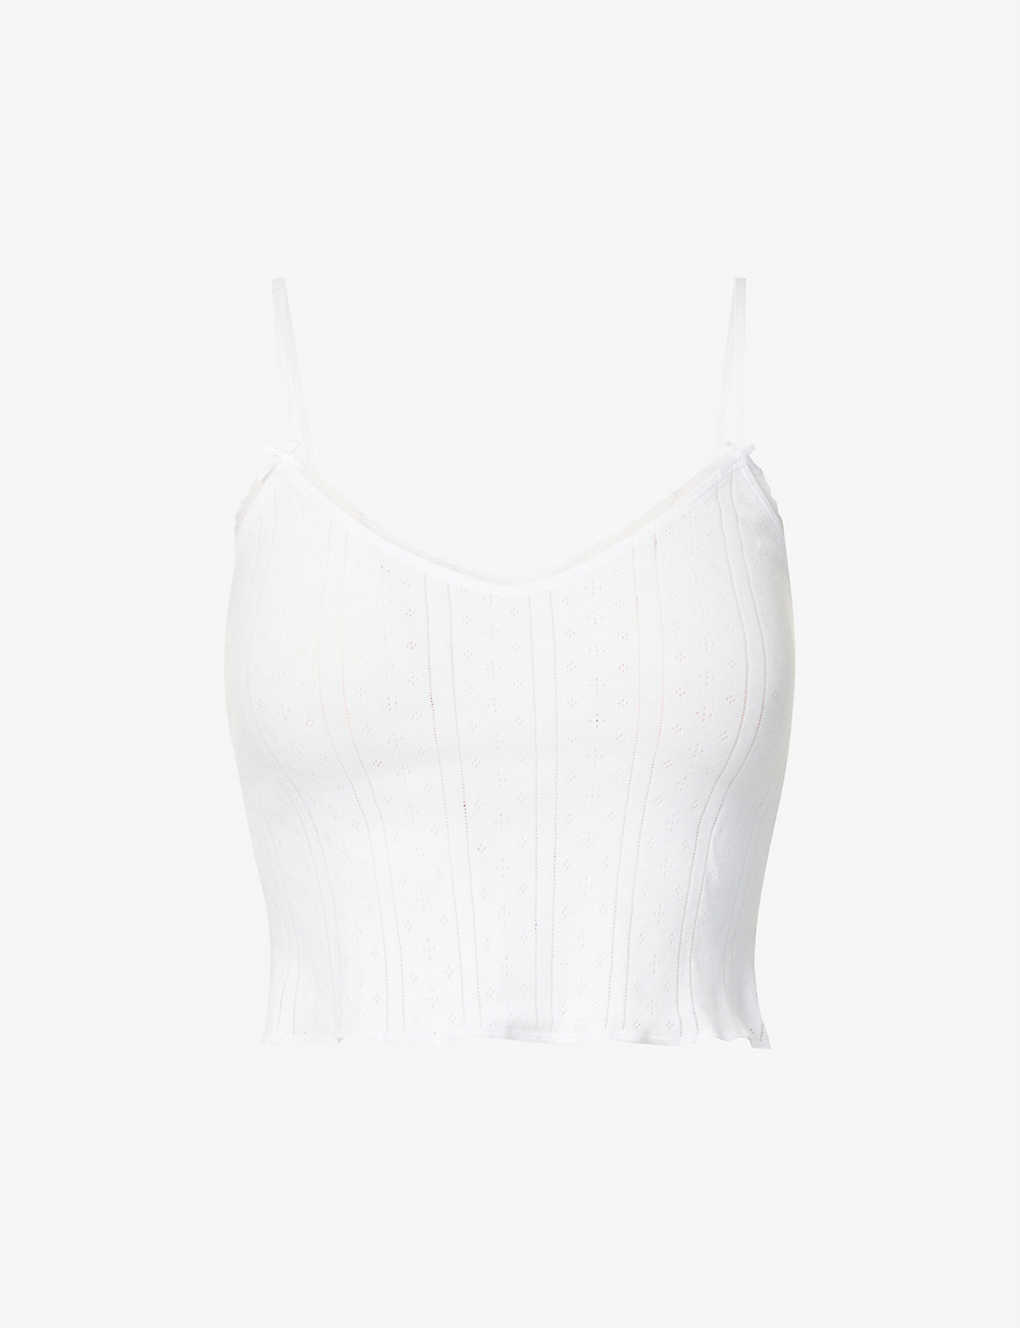 Shop Cou Cou Intimates Women's White Pointelle Sleeveless Organic-cotton Top